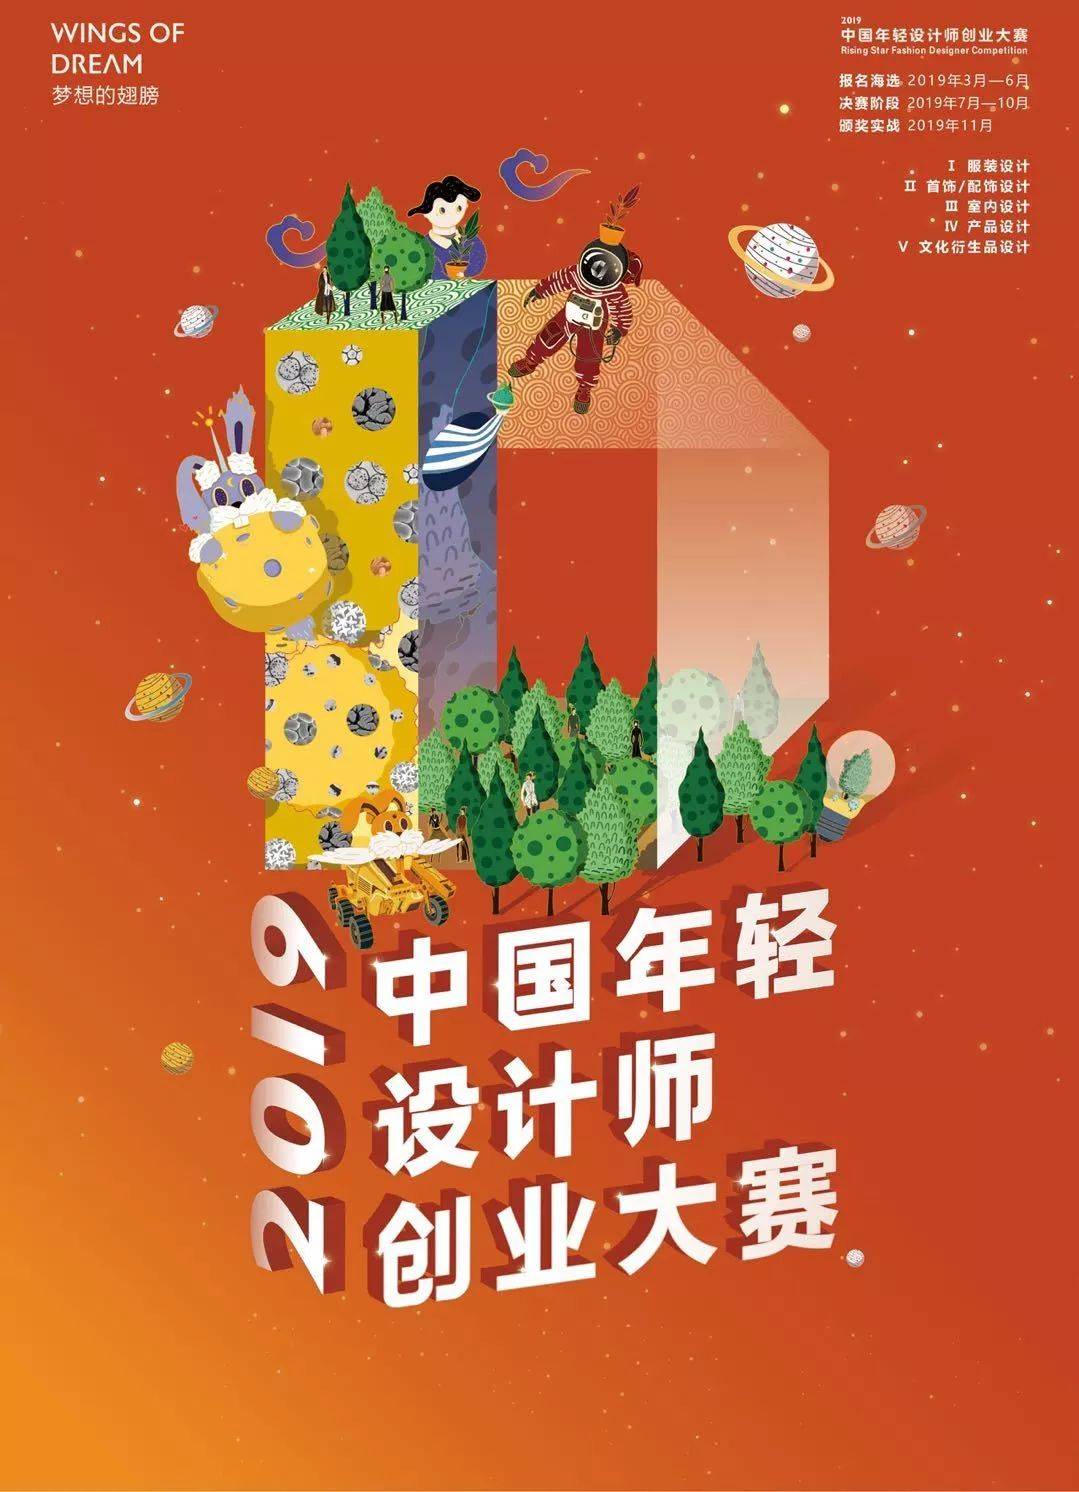 “给地球一个 T” 2019年中国年轻设计师创业大赛正式启动